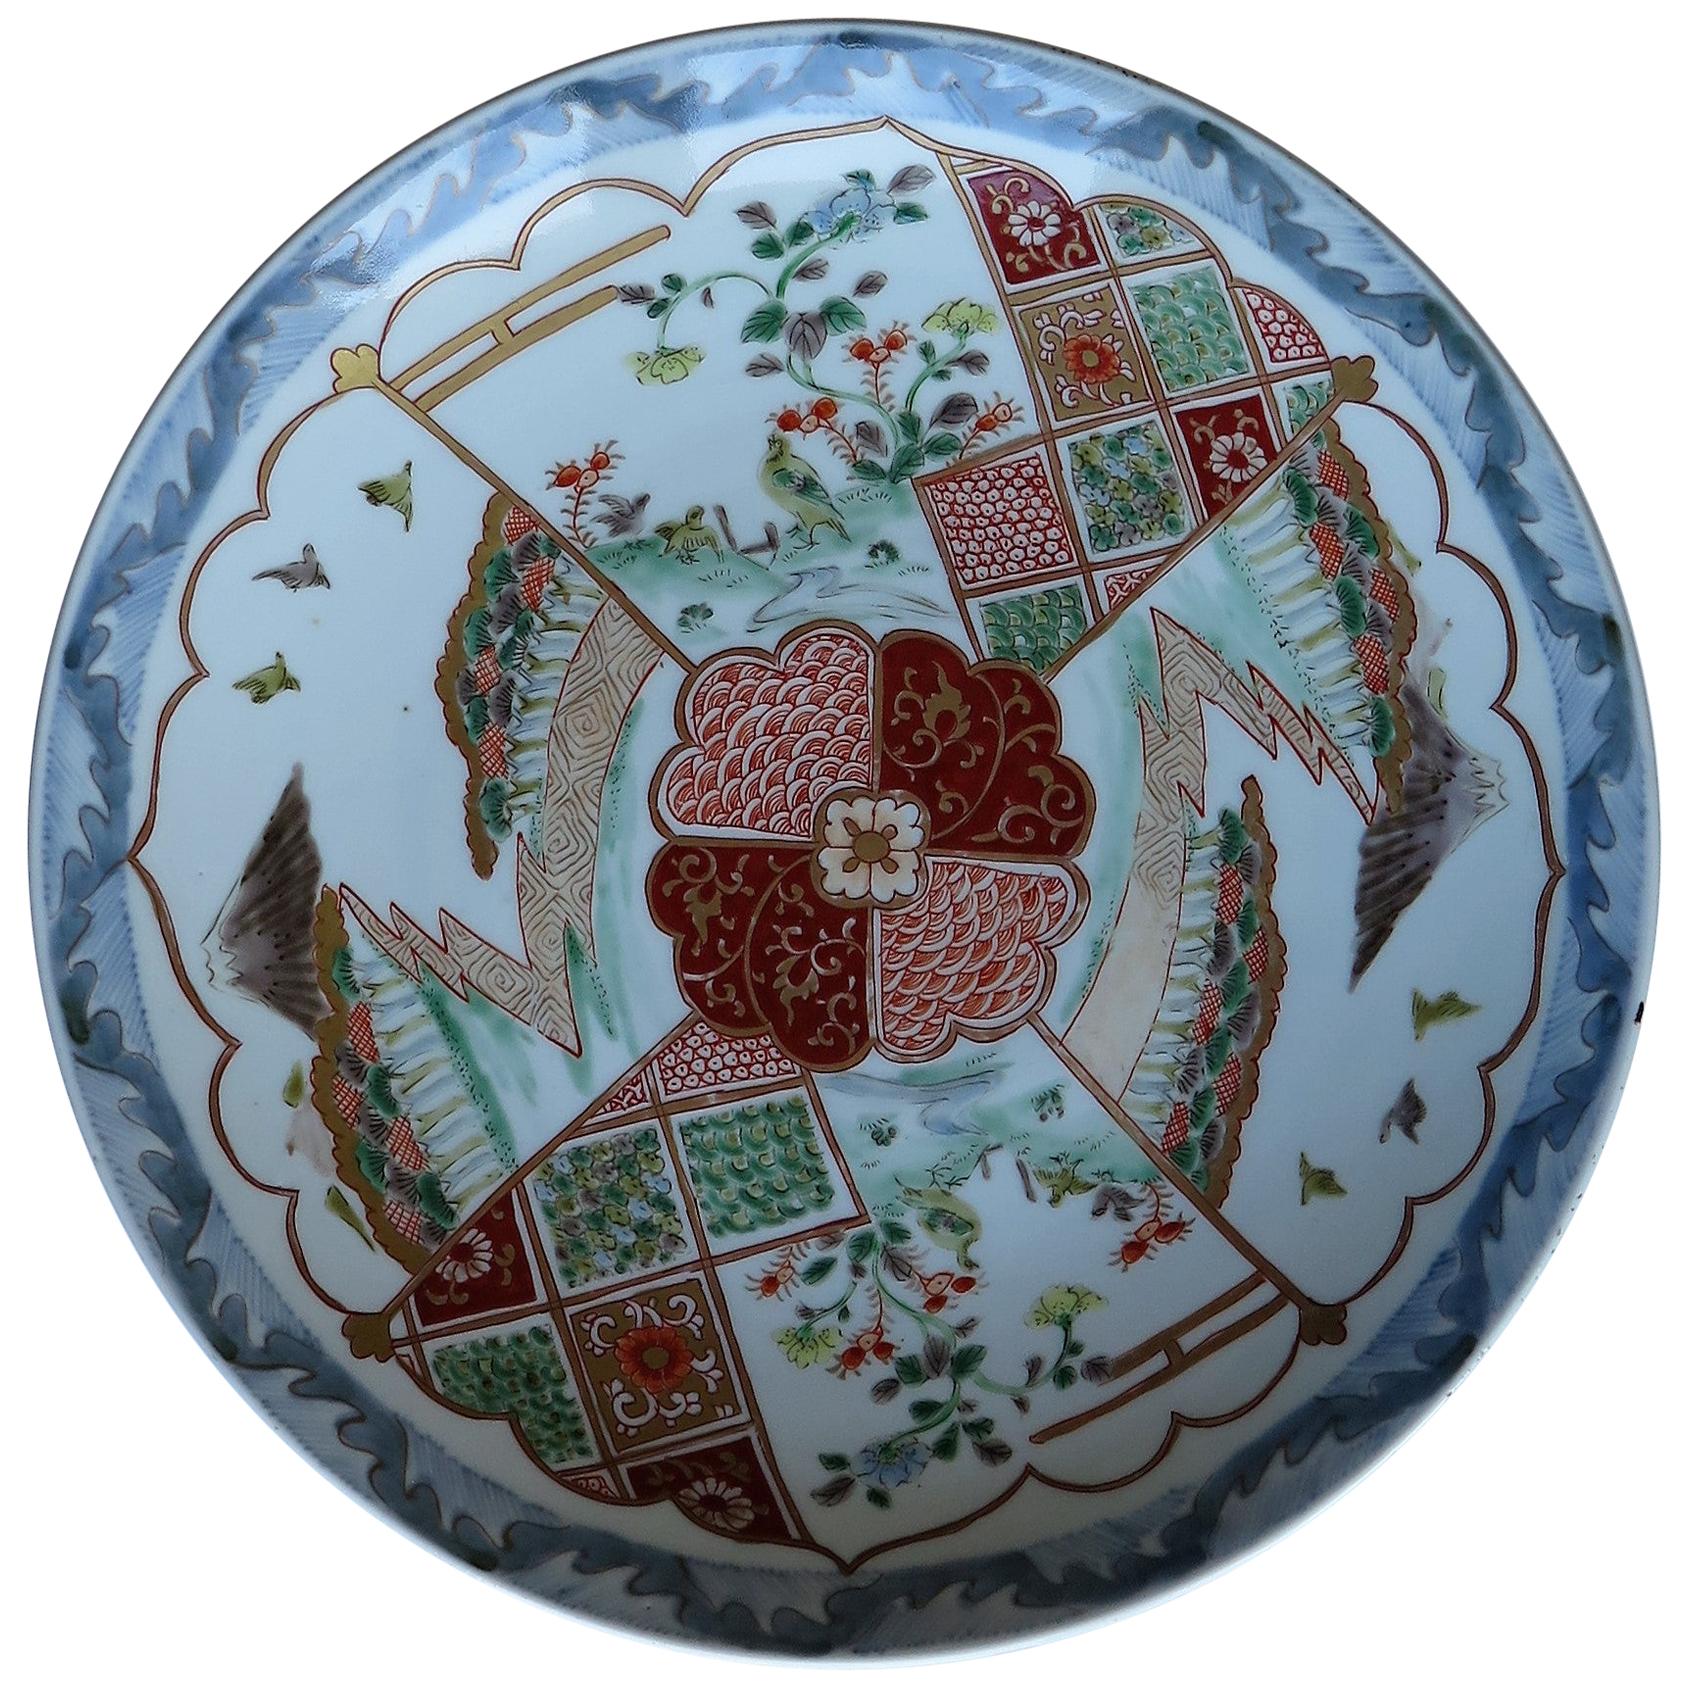 Assiette de présentation en porcelaine japonaise finement peinte à la main, période Edo vers 1840